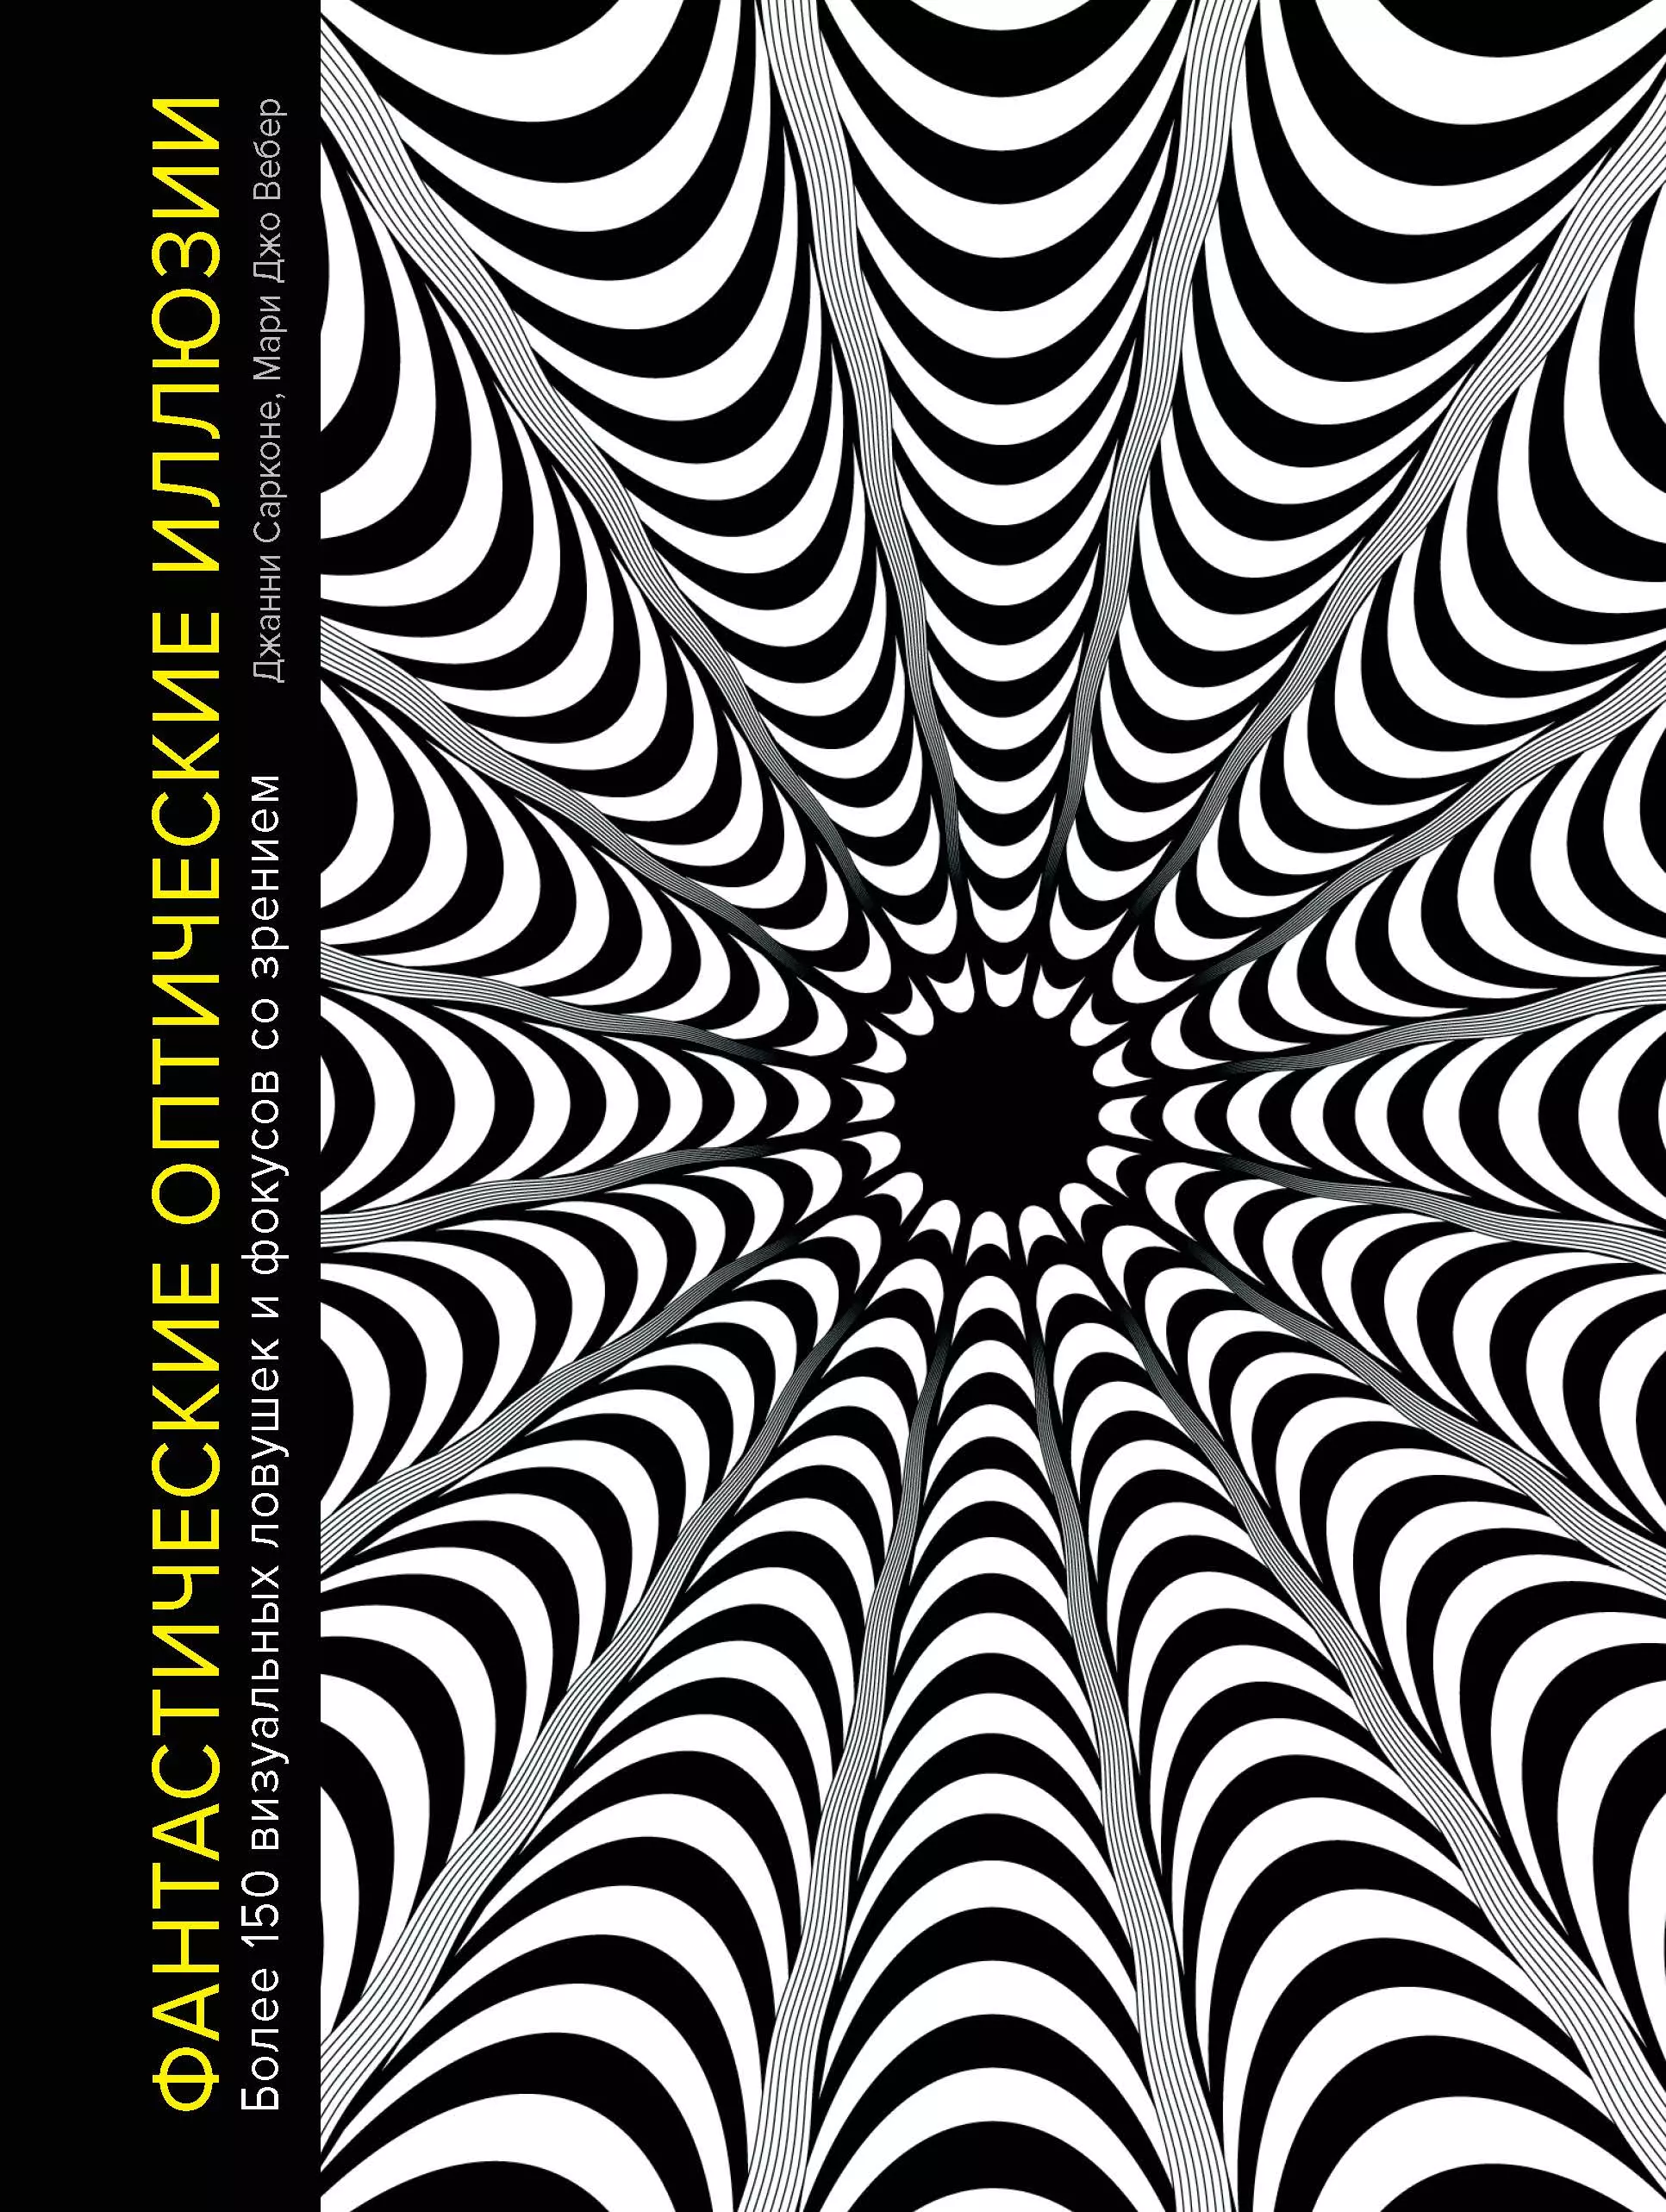 Сарконе Джанни - Фантастические оптические иллюзии. Более 150 визуальных ловушек и фокусов со зрением